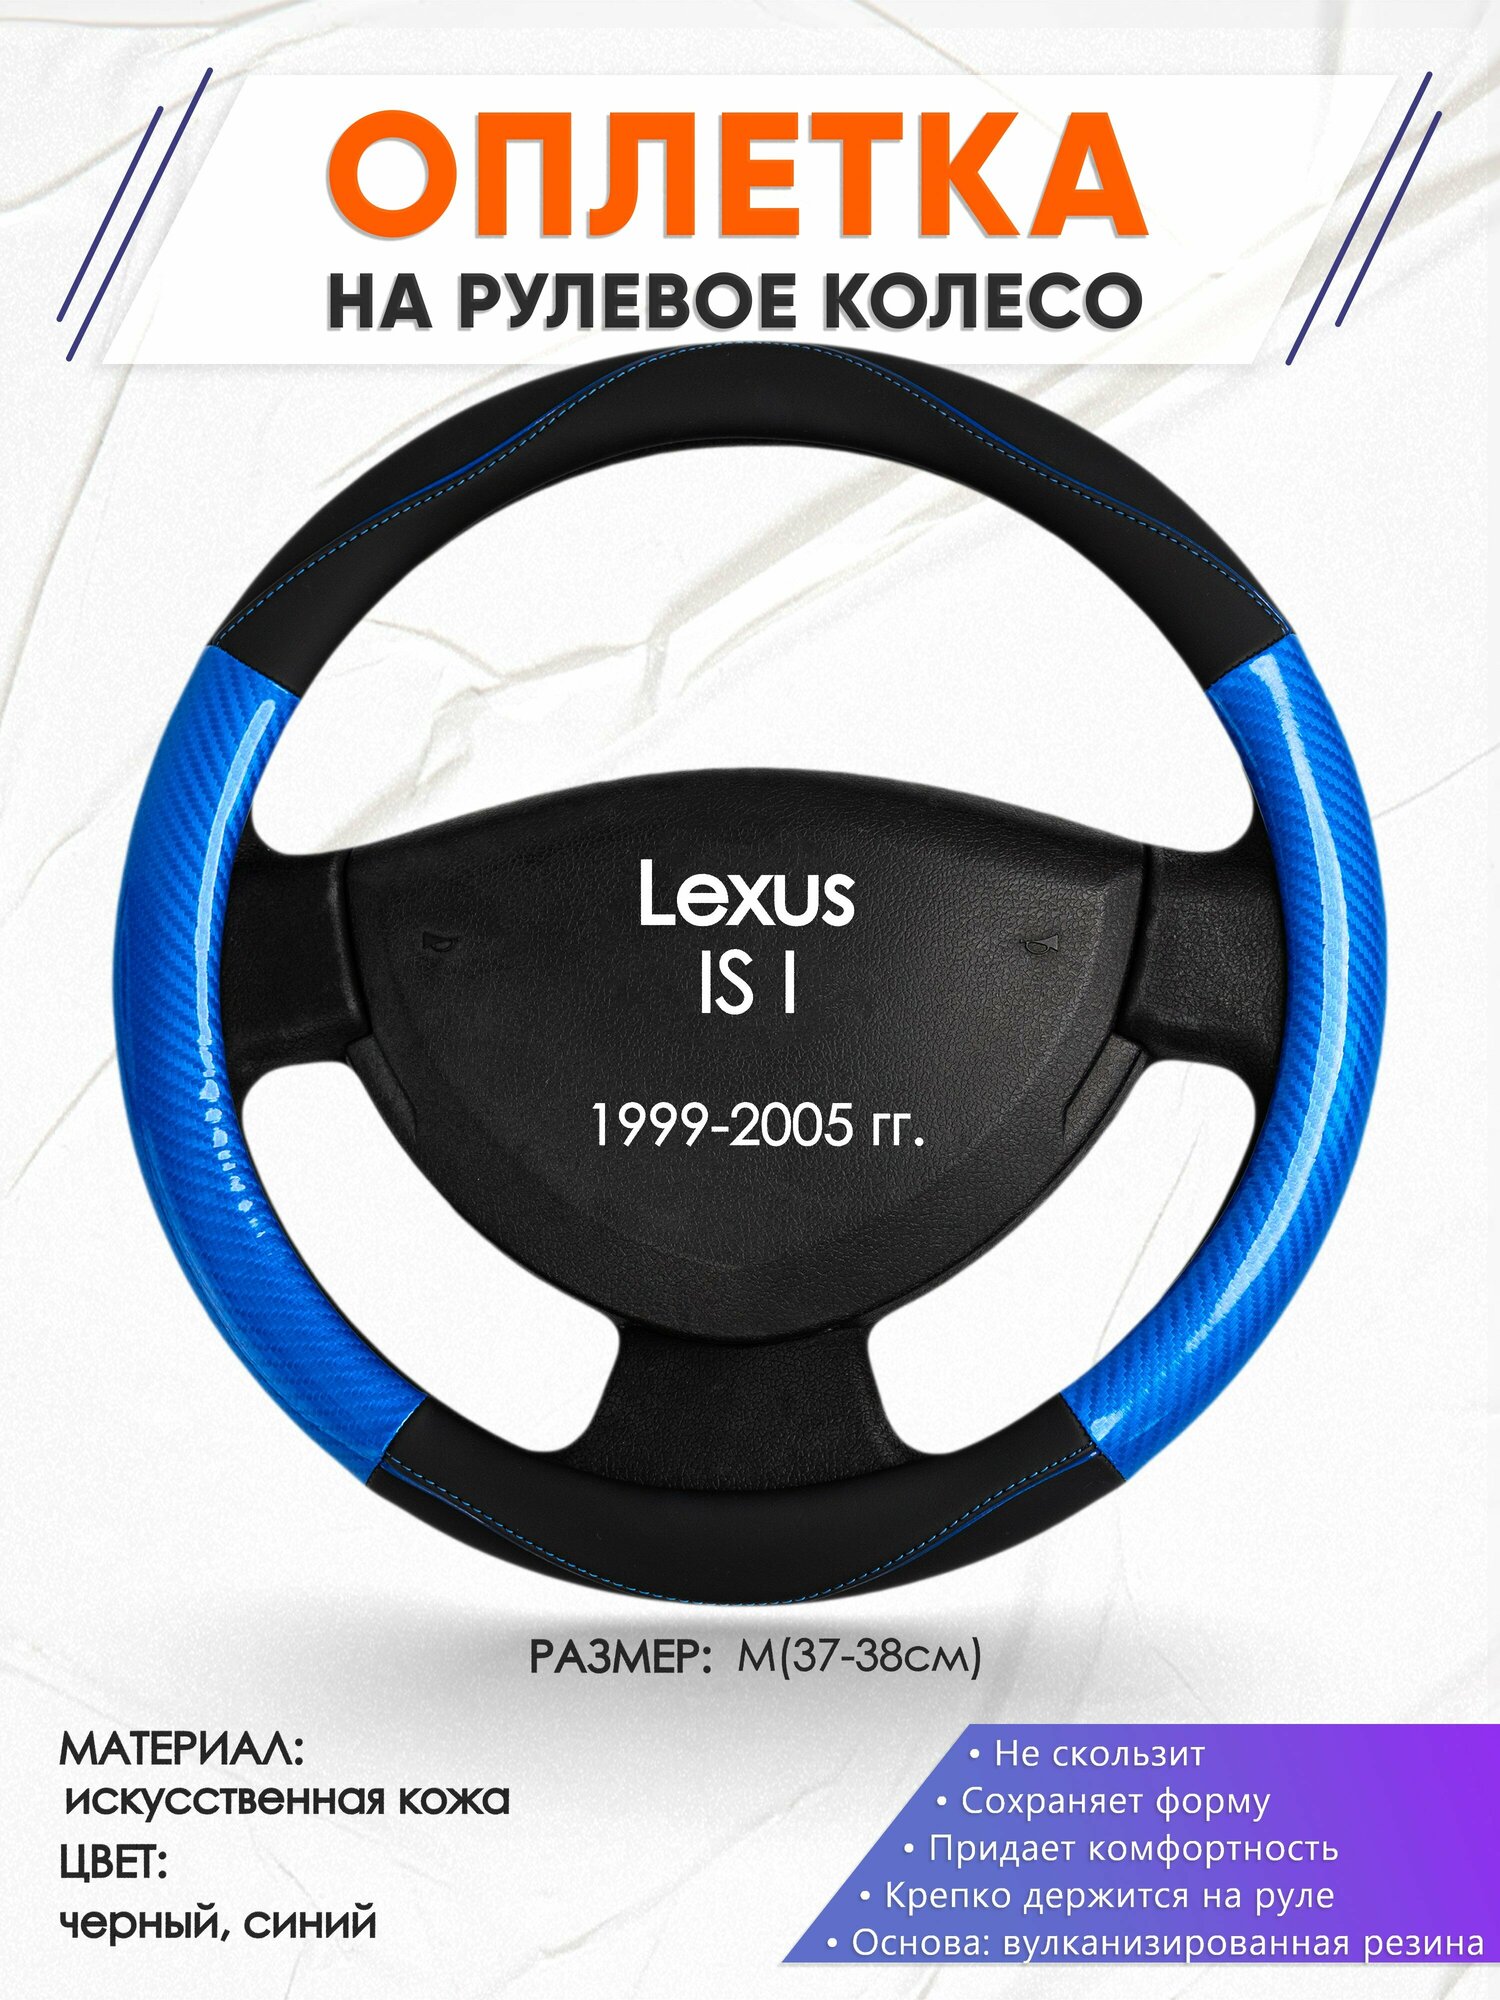 Оплетка наруль для Lexus IS I(Лексус ИС 1) 1999-2005 годов выпуска, размер M(37-38см), Искусственная кожа 17